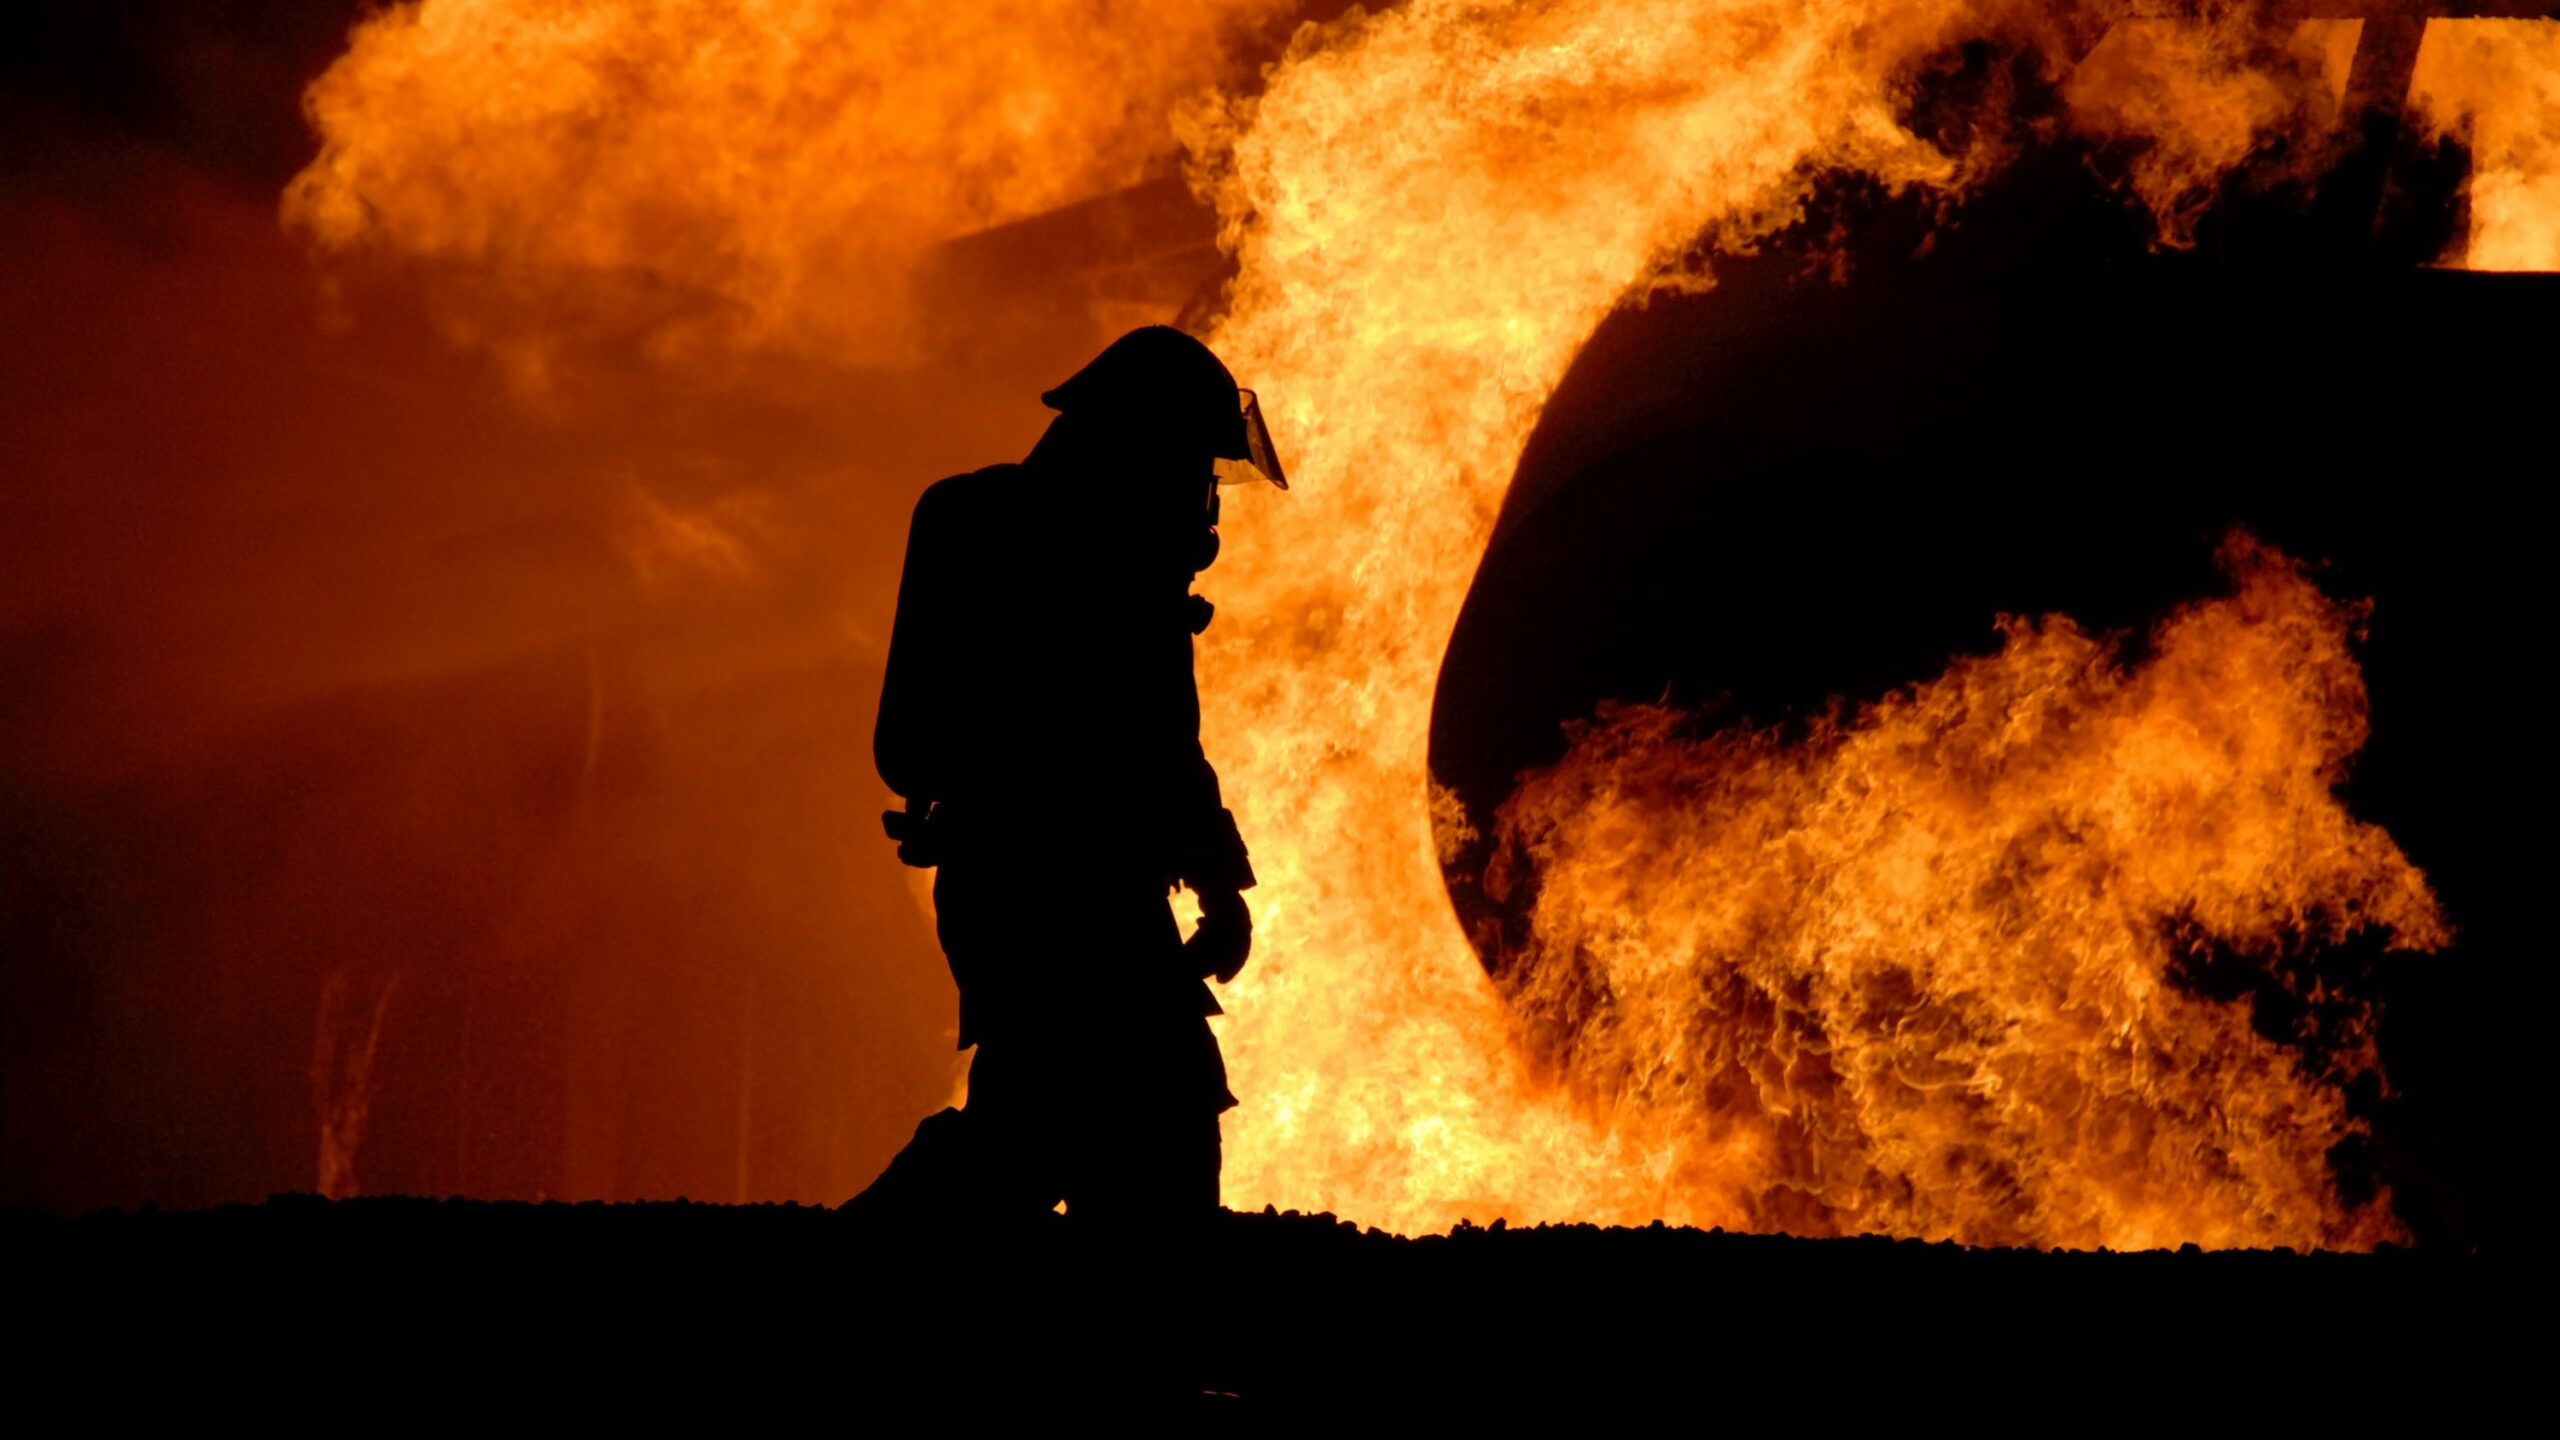 Причину гибели людей в пожаре во Фрязино установят с помощью экспертизы